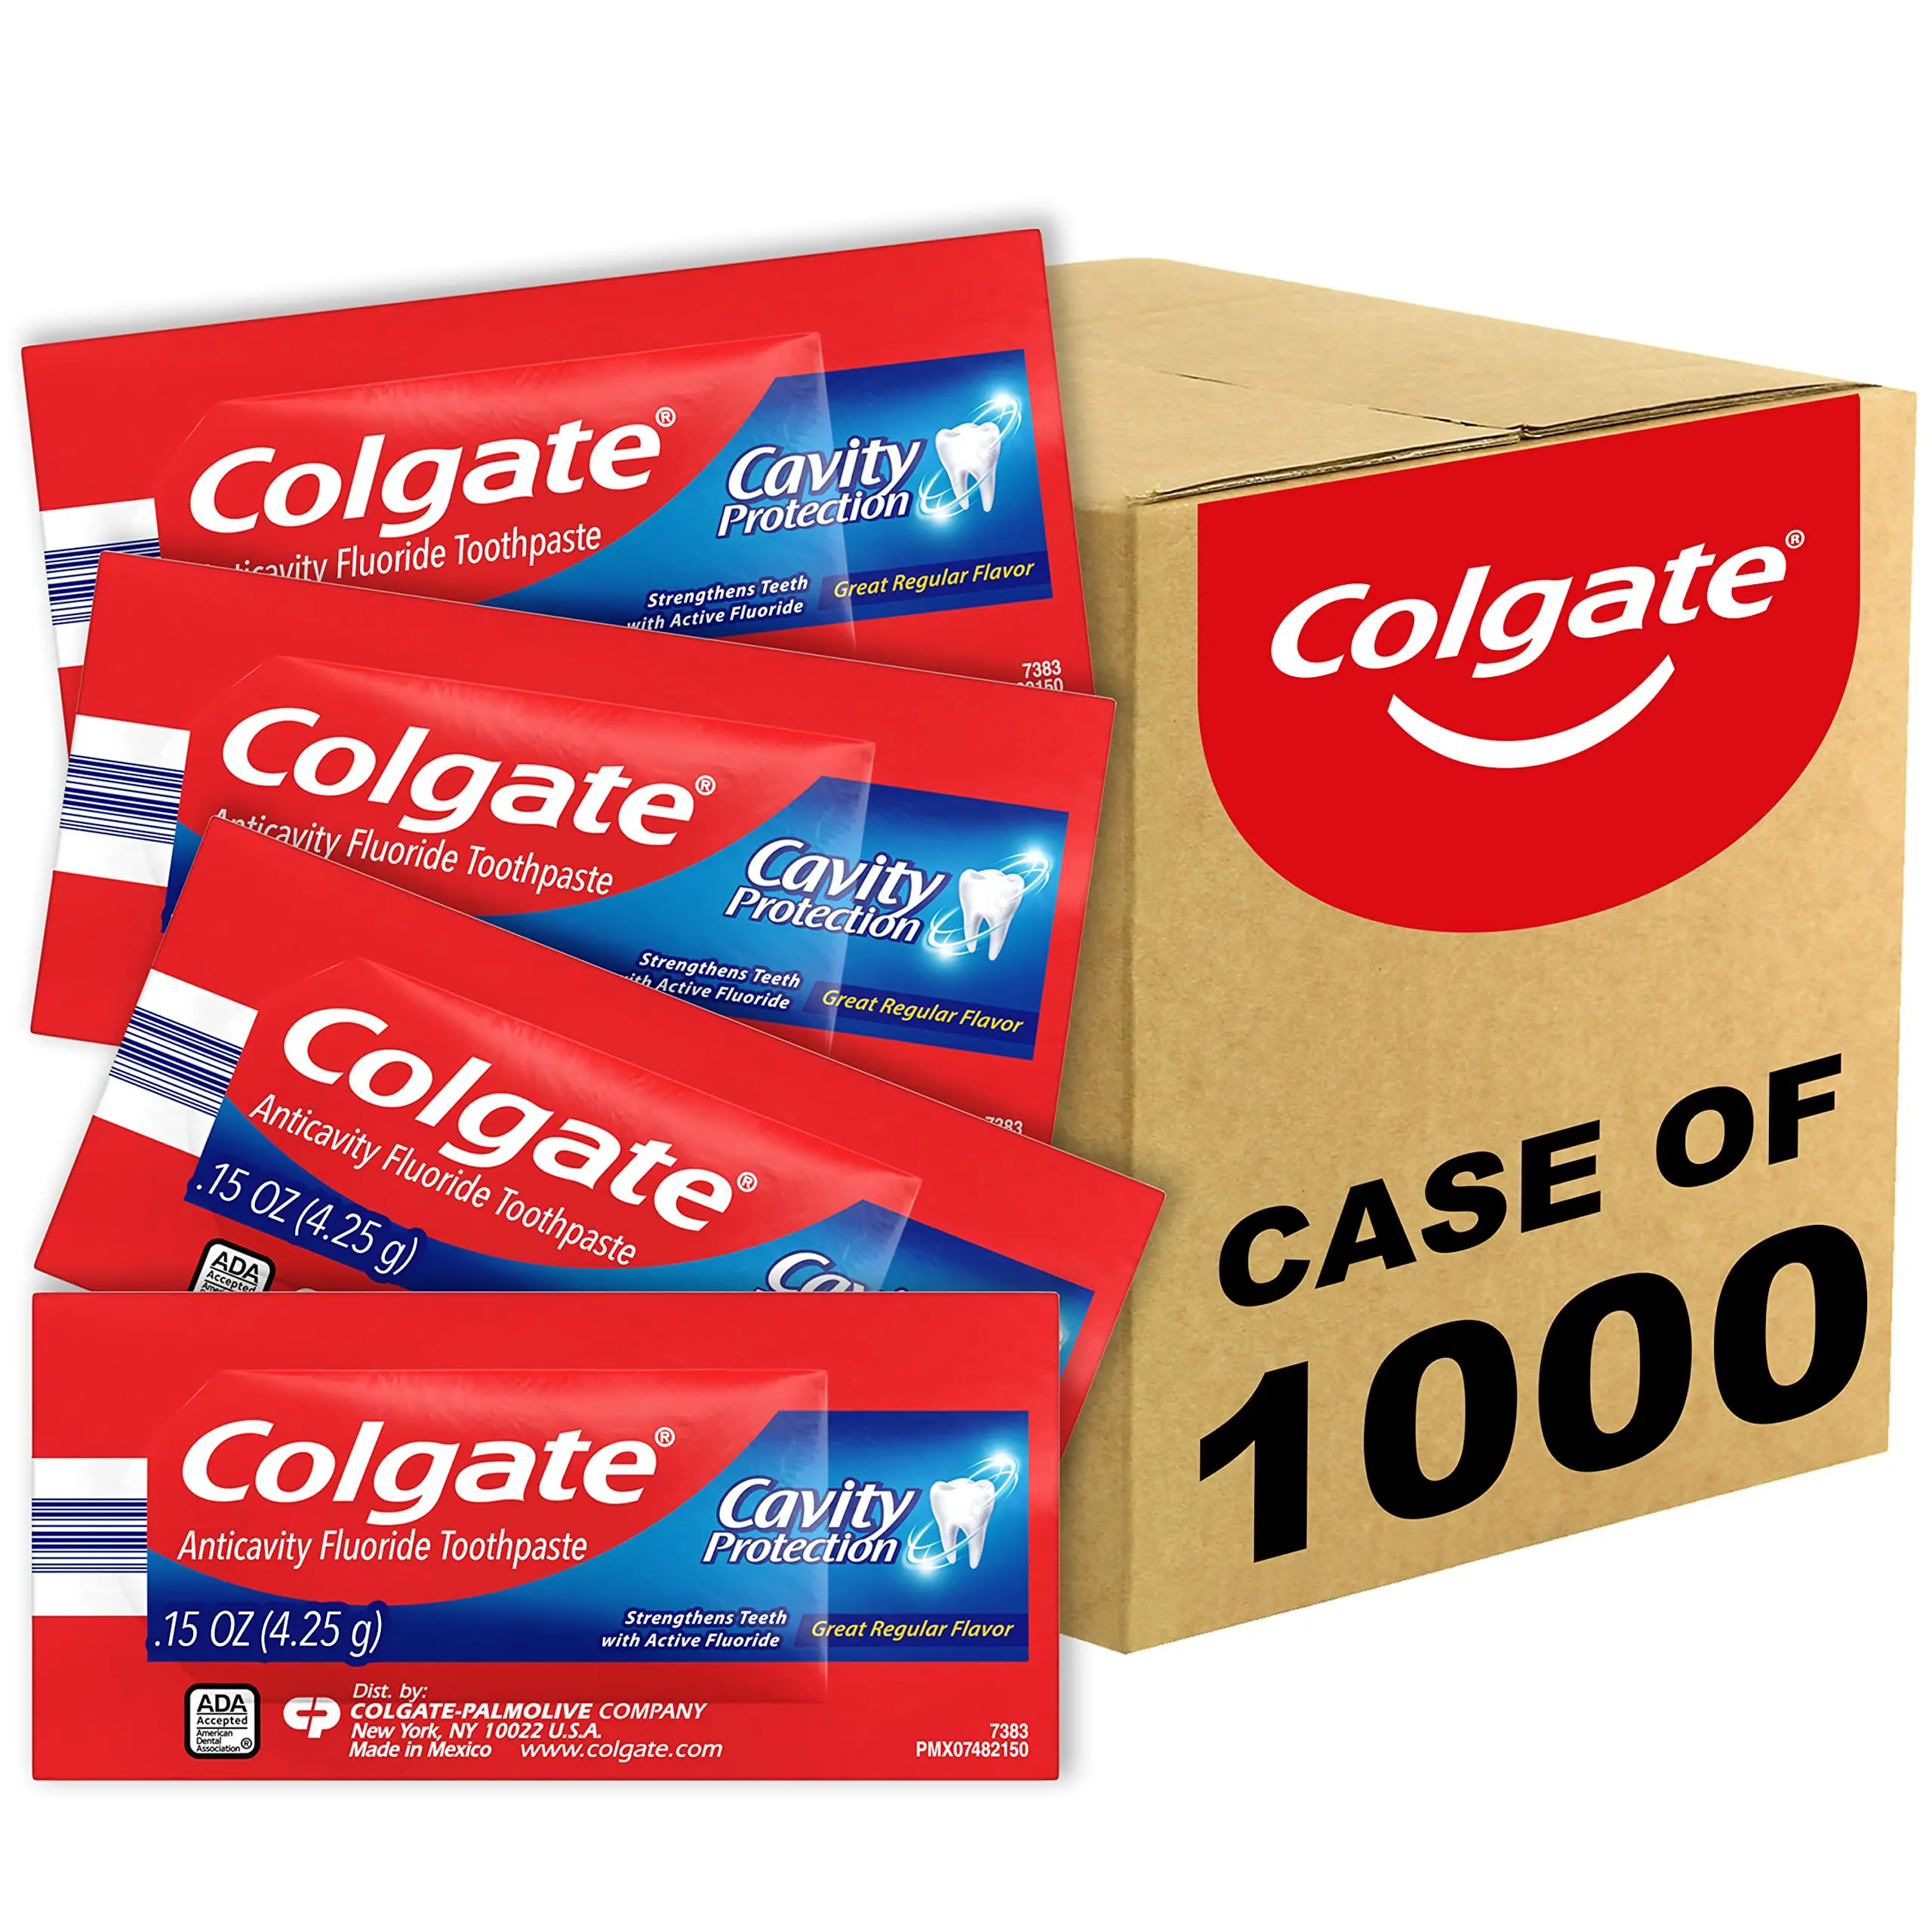 Colgate: pasta dental confiable para el cuidado bucal